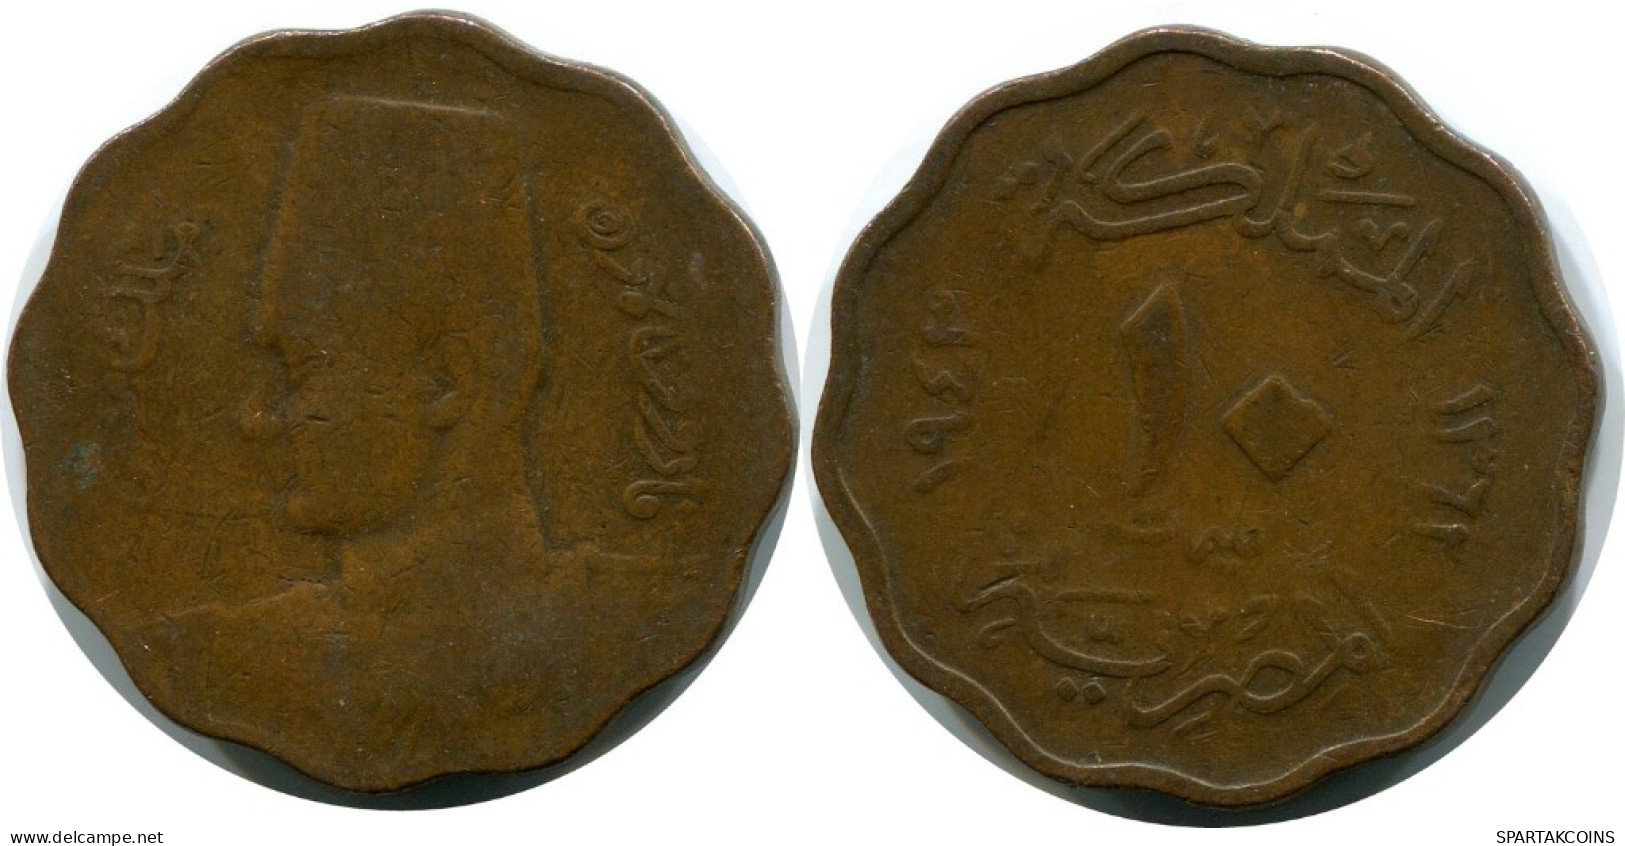 10 MILLIEMES 1943 EGYPT Islamic Coin #AH610.3.U.A - Egypt